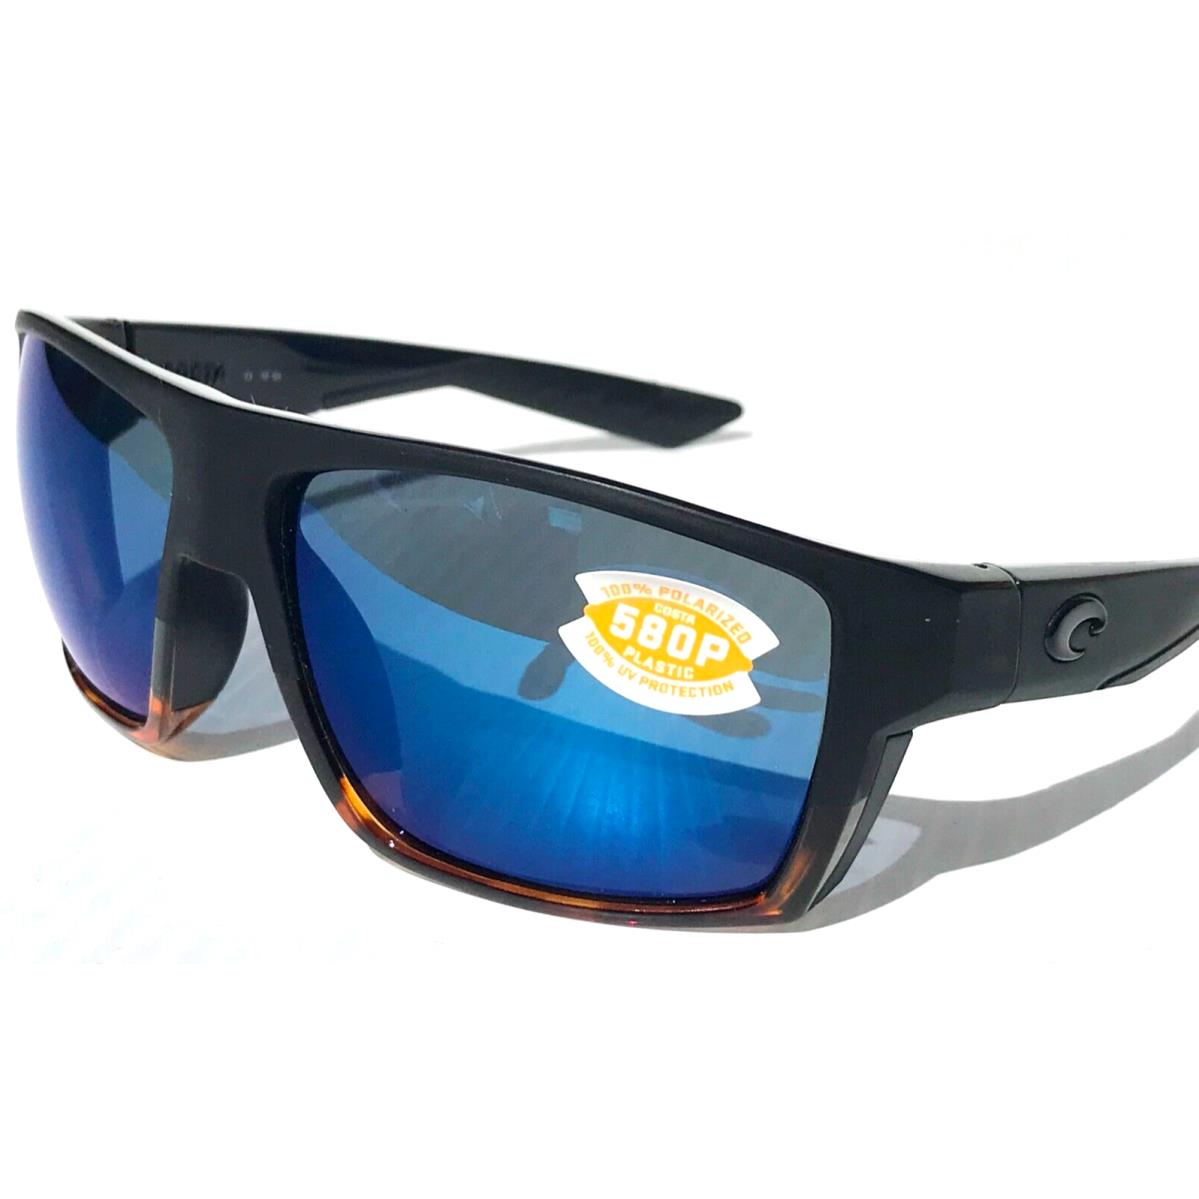 Costa Del Mar sunglasses Bloke - Frame: Black & Tortoise, Lens: Blue 5